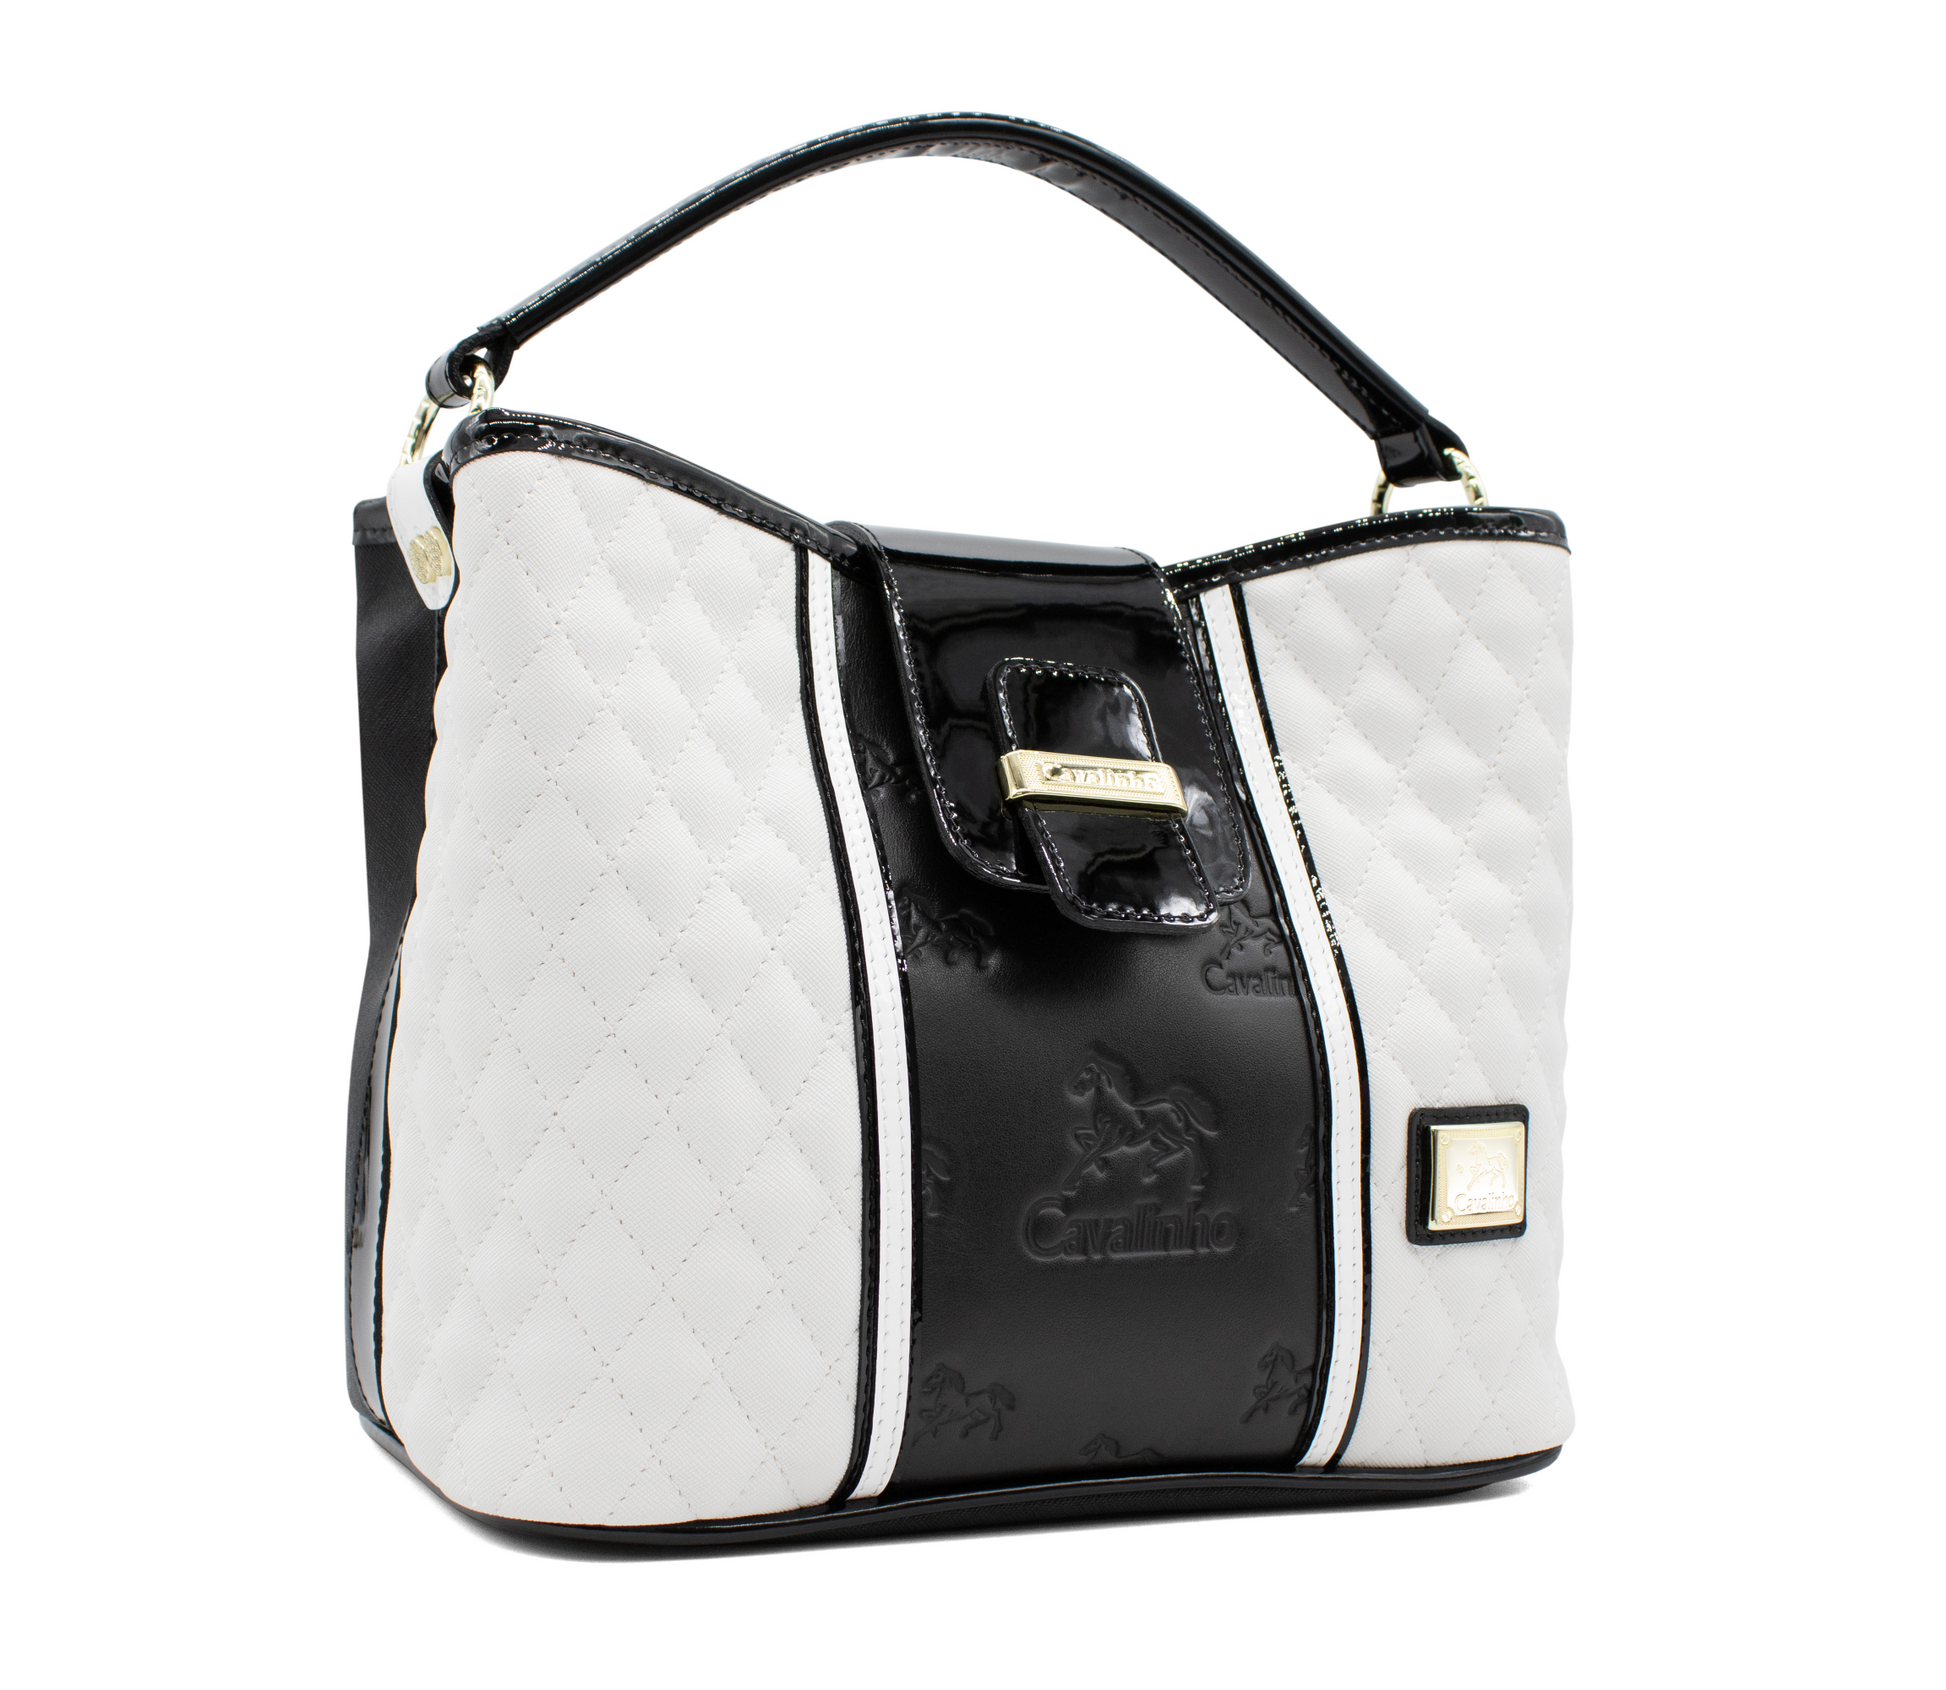 Cavalinho Noble Handbag - Black and White - 18180157.33_2